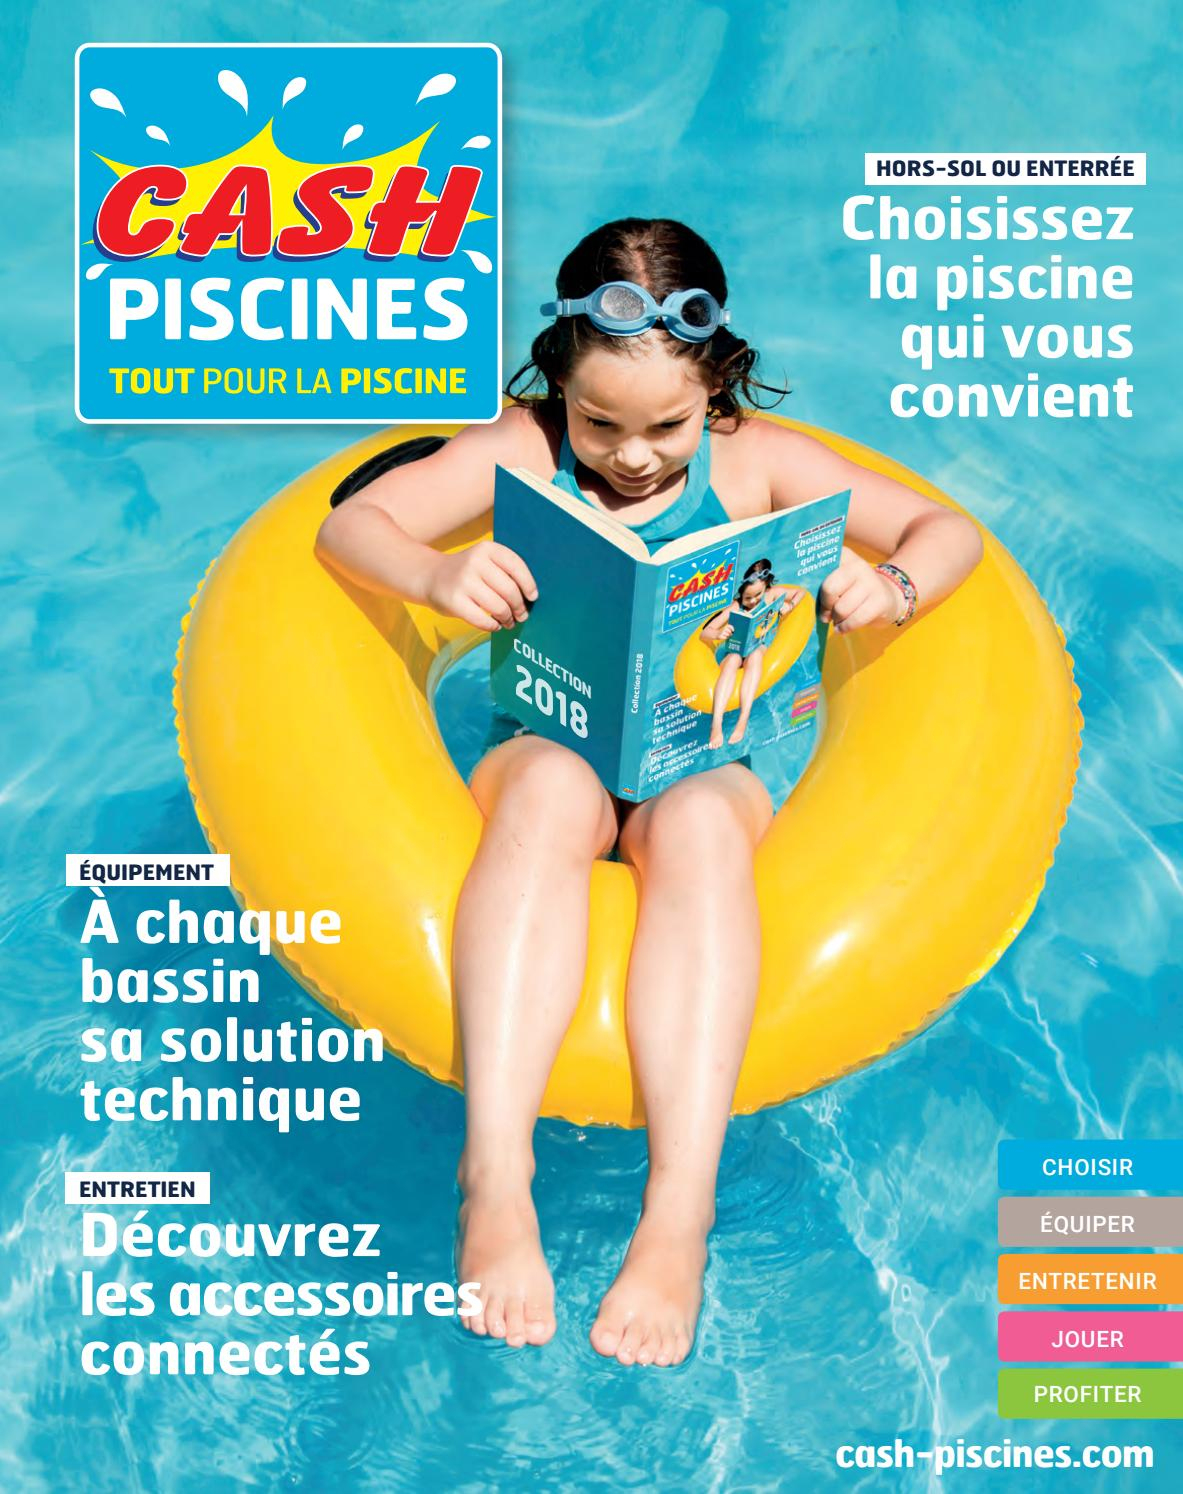 Catalogue Cash Piscine 2018 By Octave Octave - Issuu tout Cash Piscine Le Cres